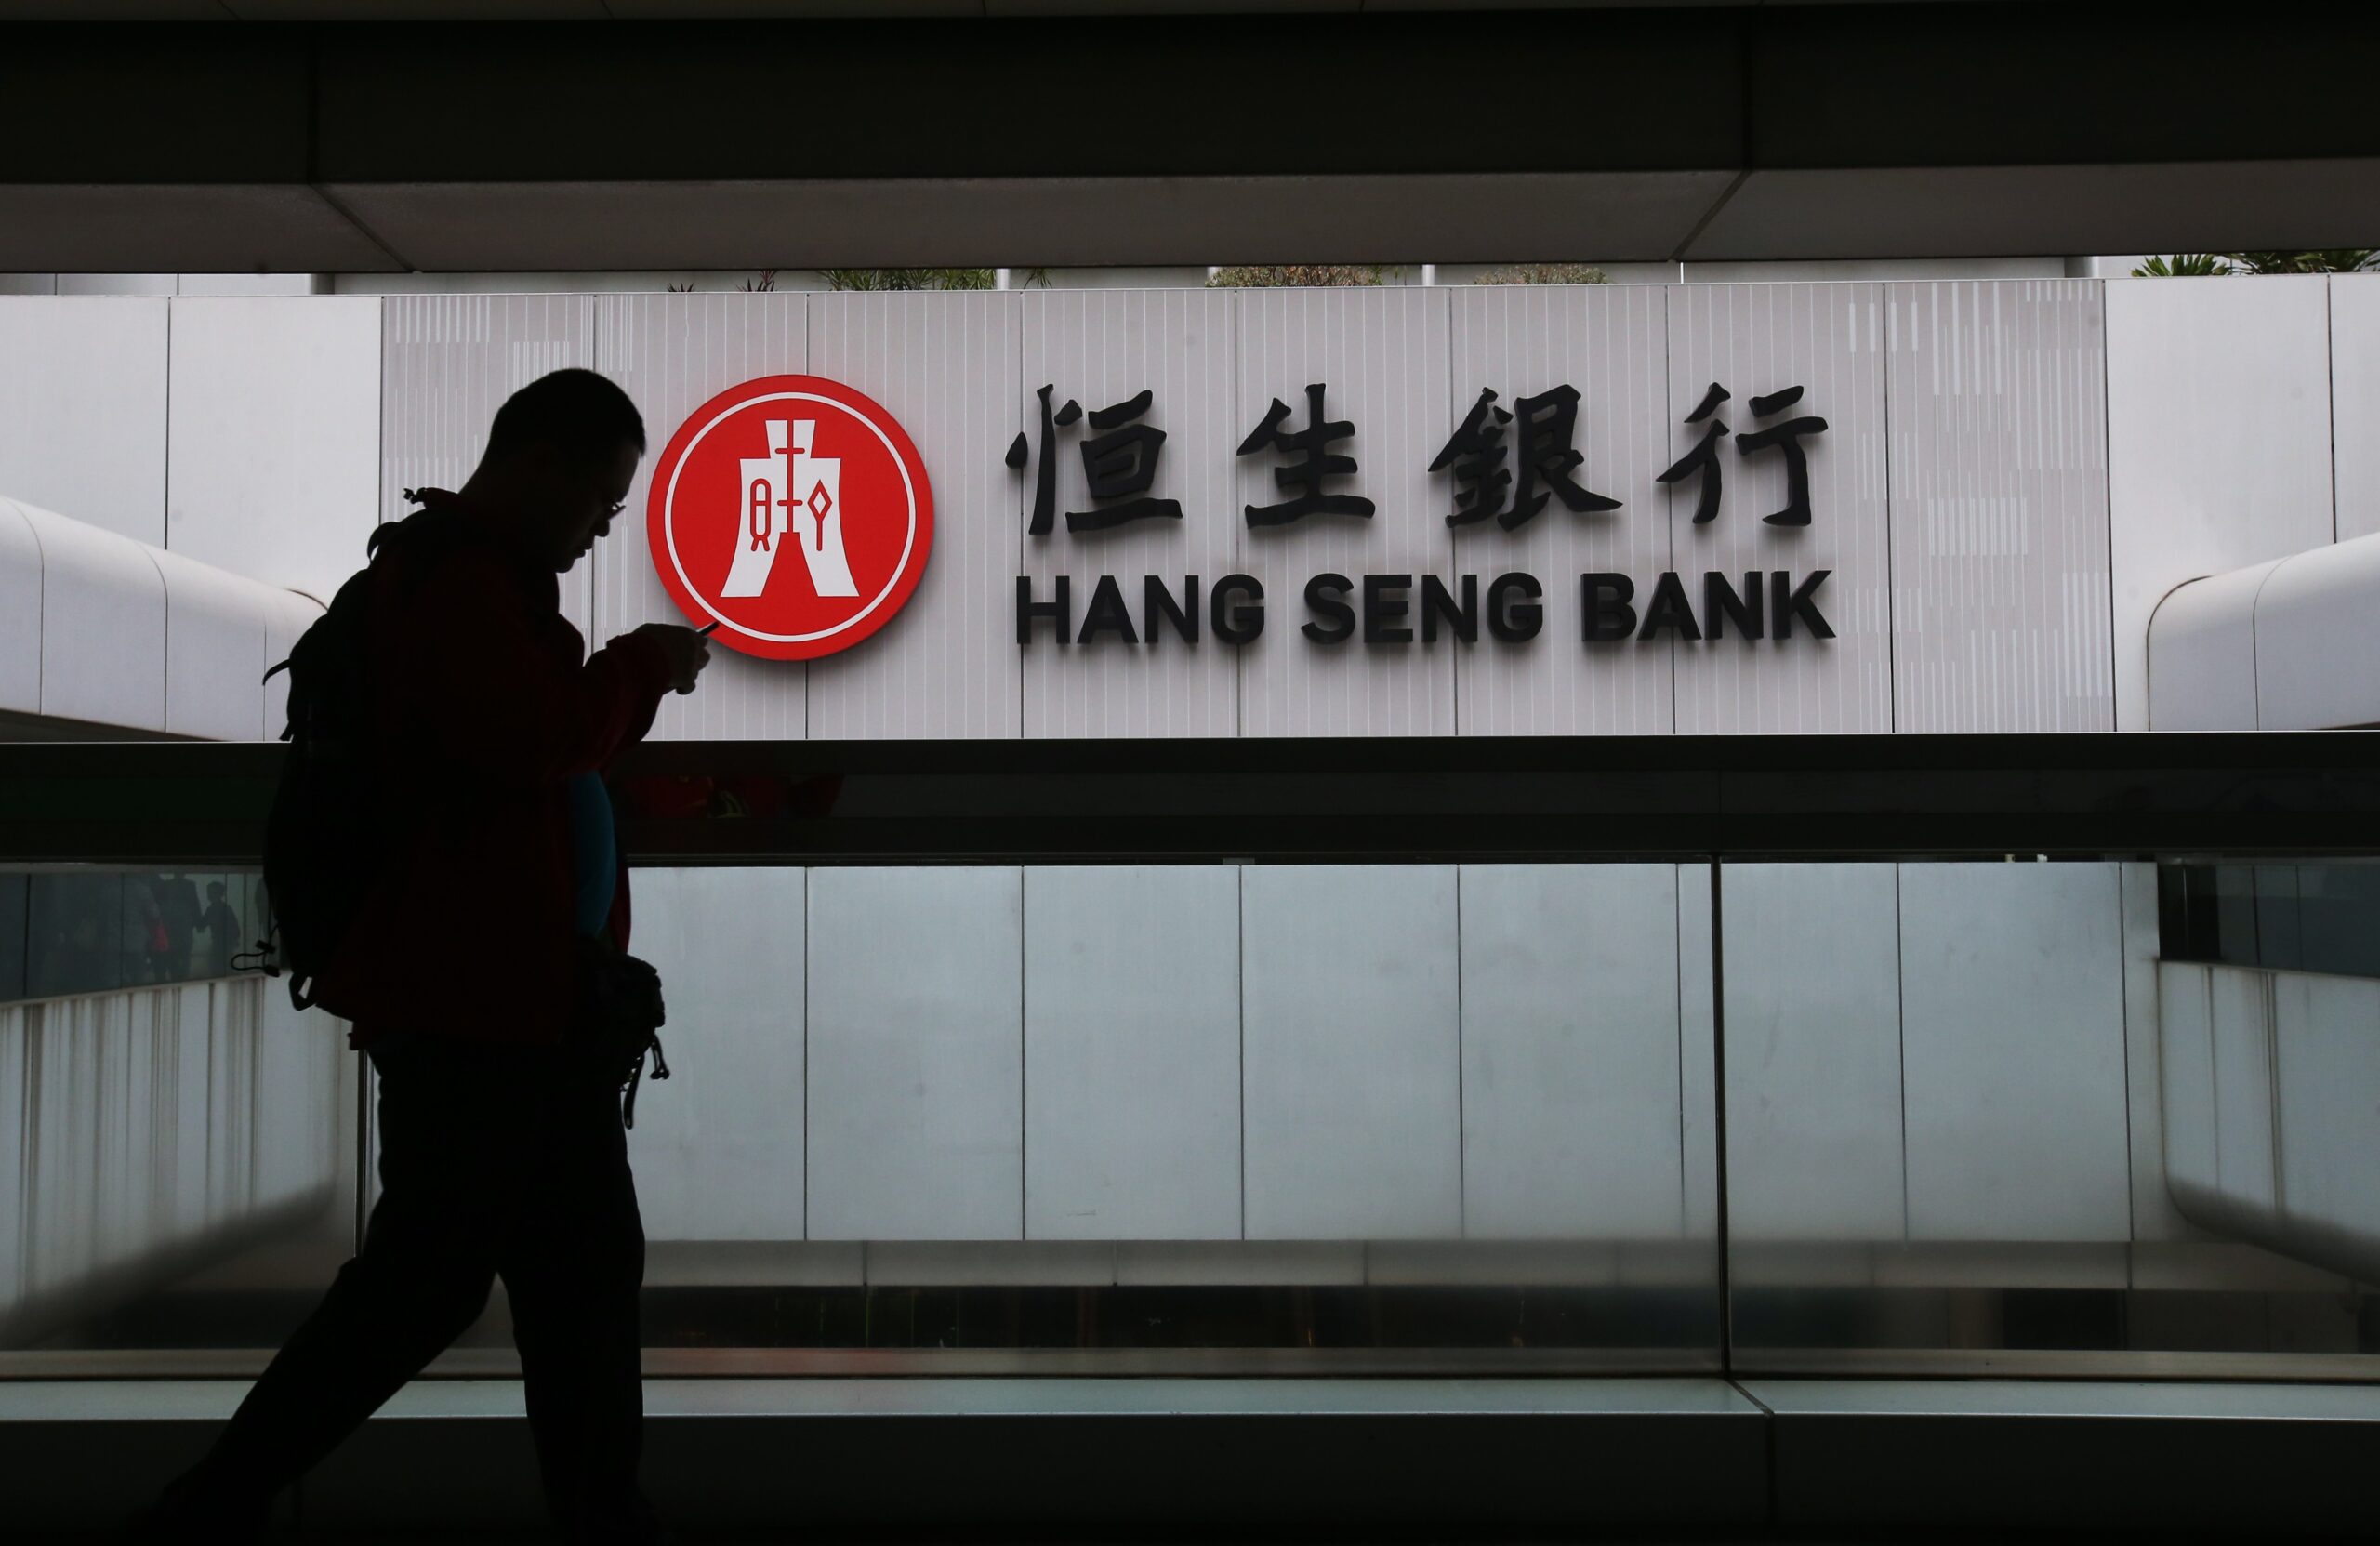 Los rebrotes en China y los temores por las inmobiliarias tumban al Hang Seng